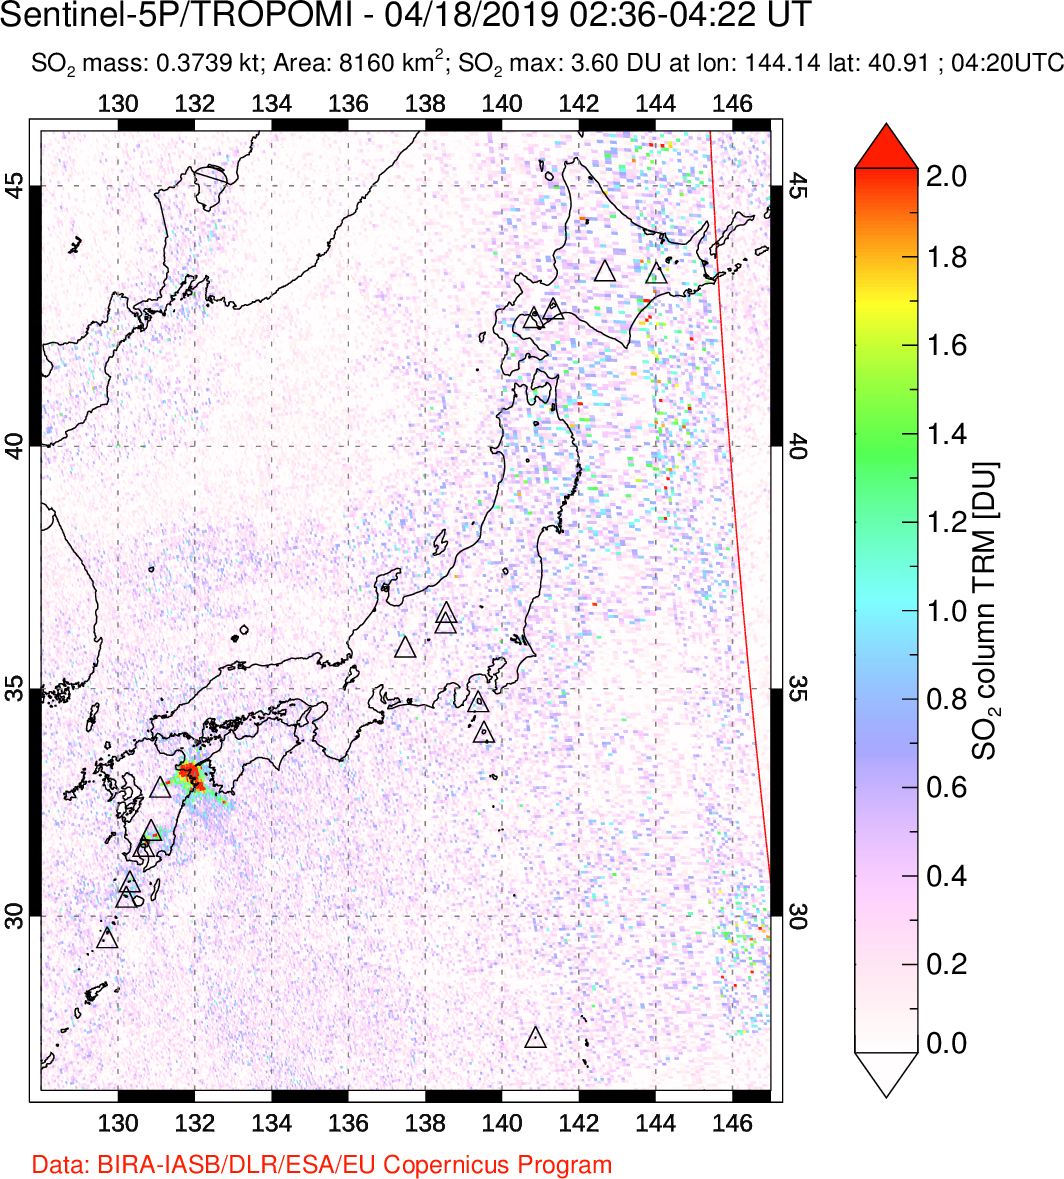 A sulfur dioxide image over Japan on Apr 18, 2019.